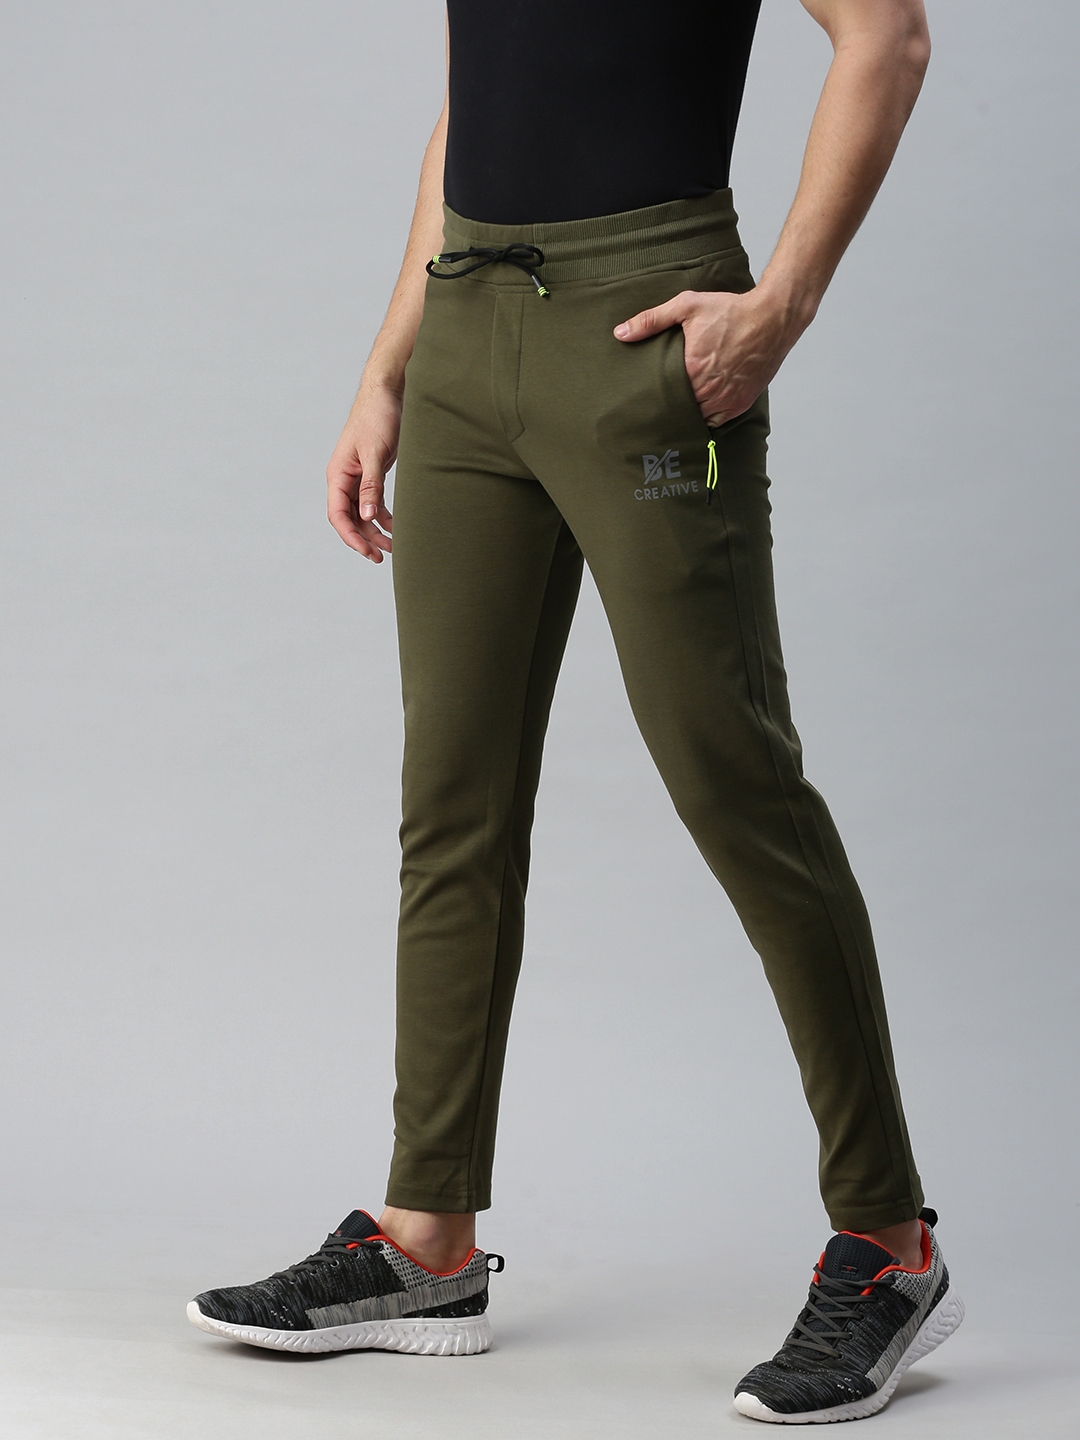 Buy Highlander Navy Blue Slim Fit Track Pants for Men Online at Rs449   Ketch